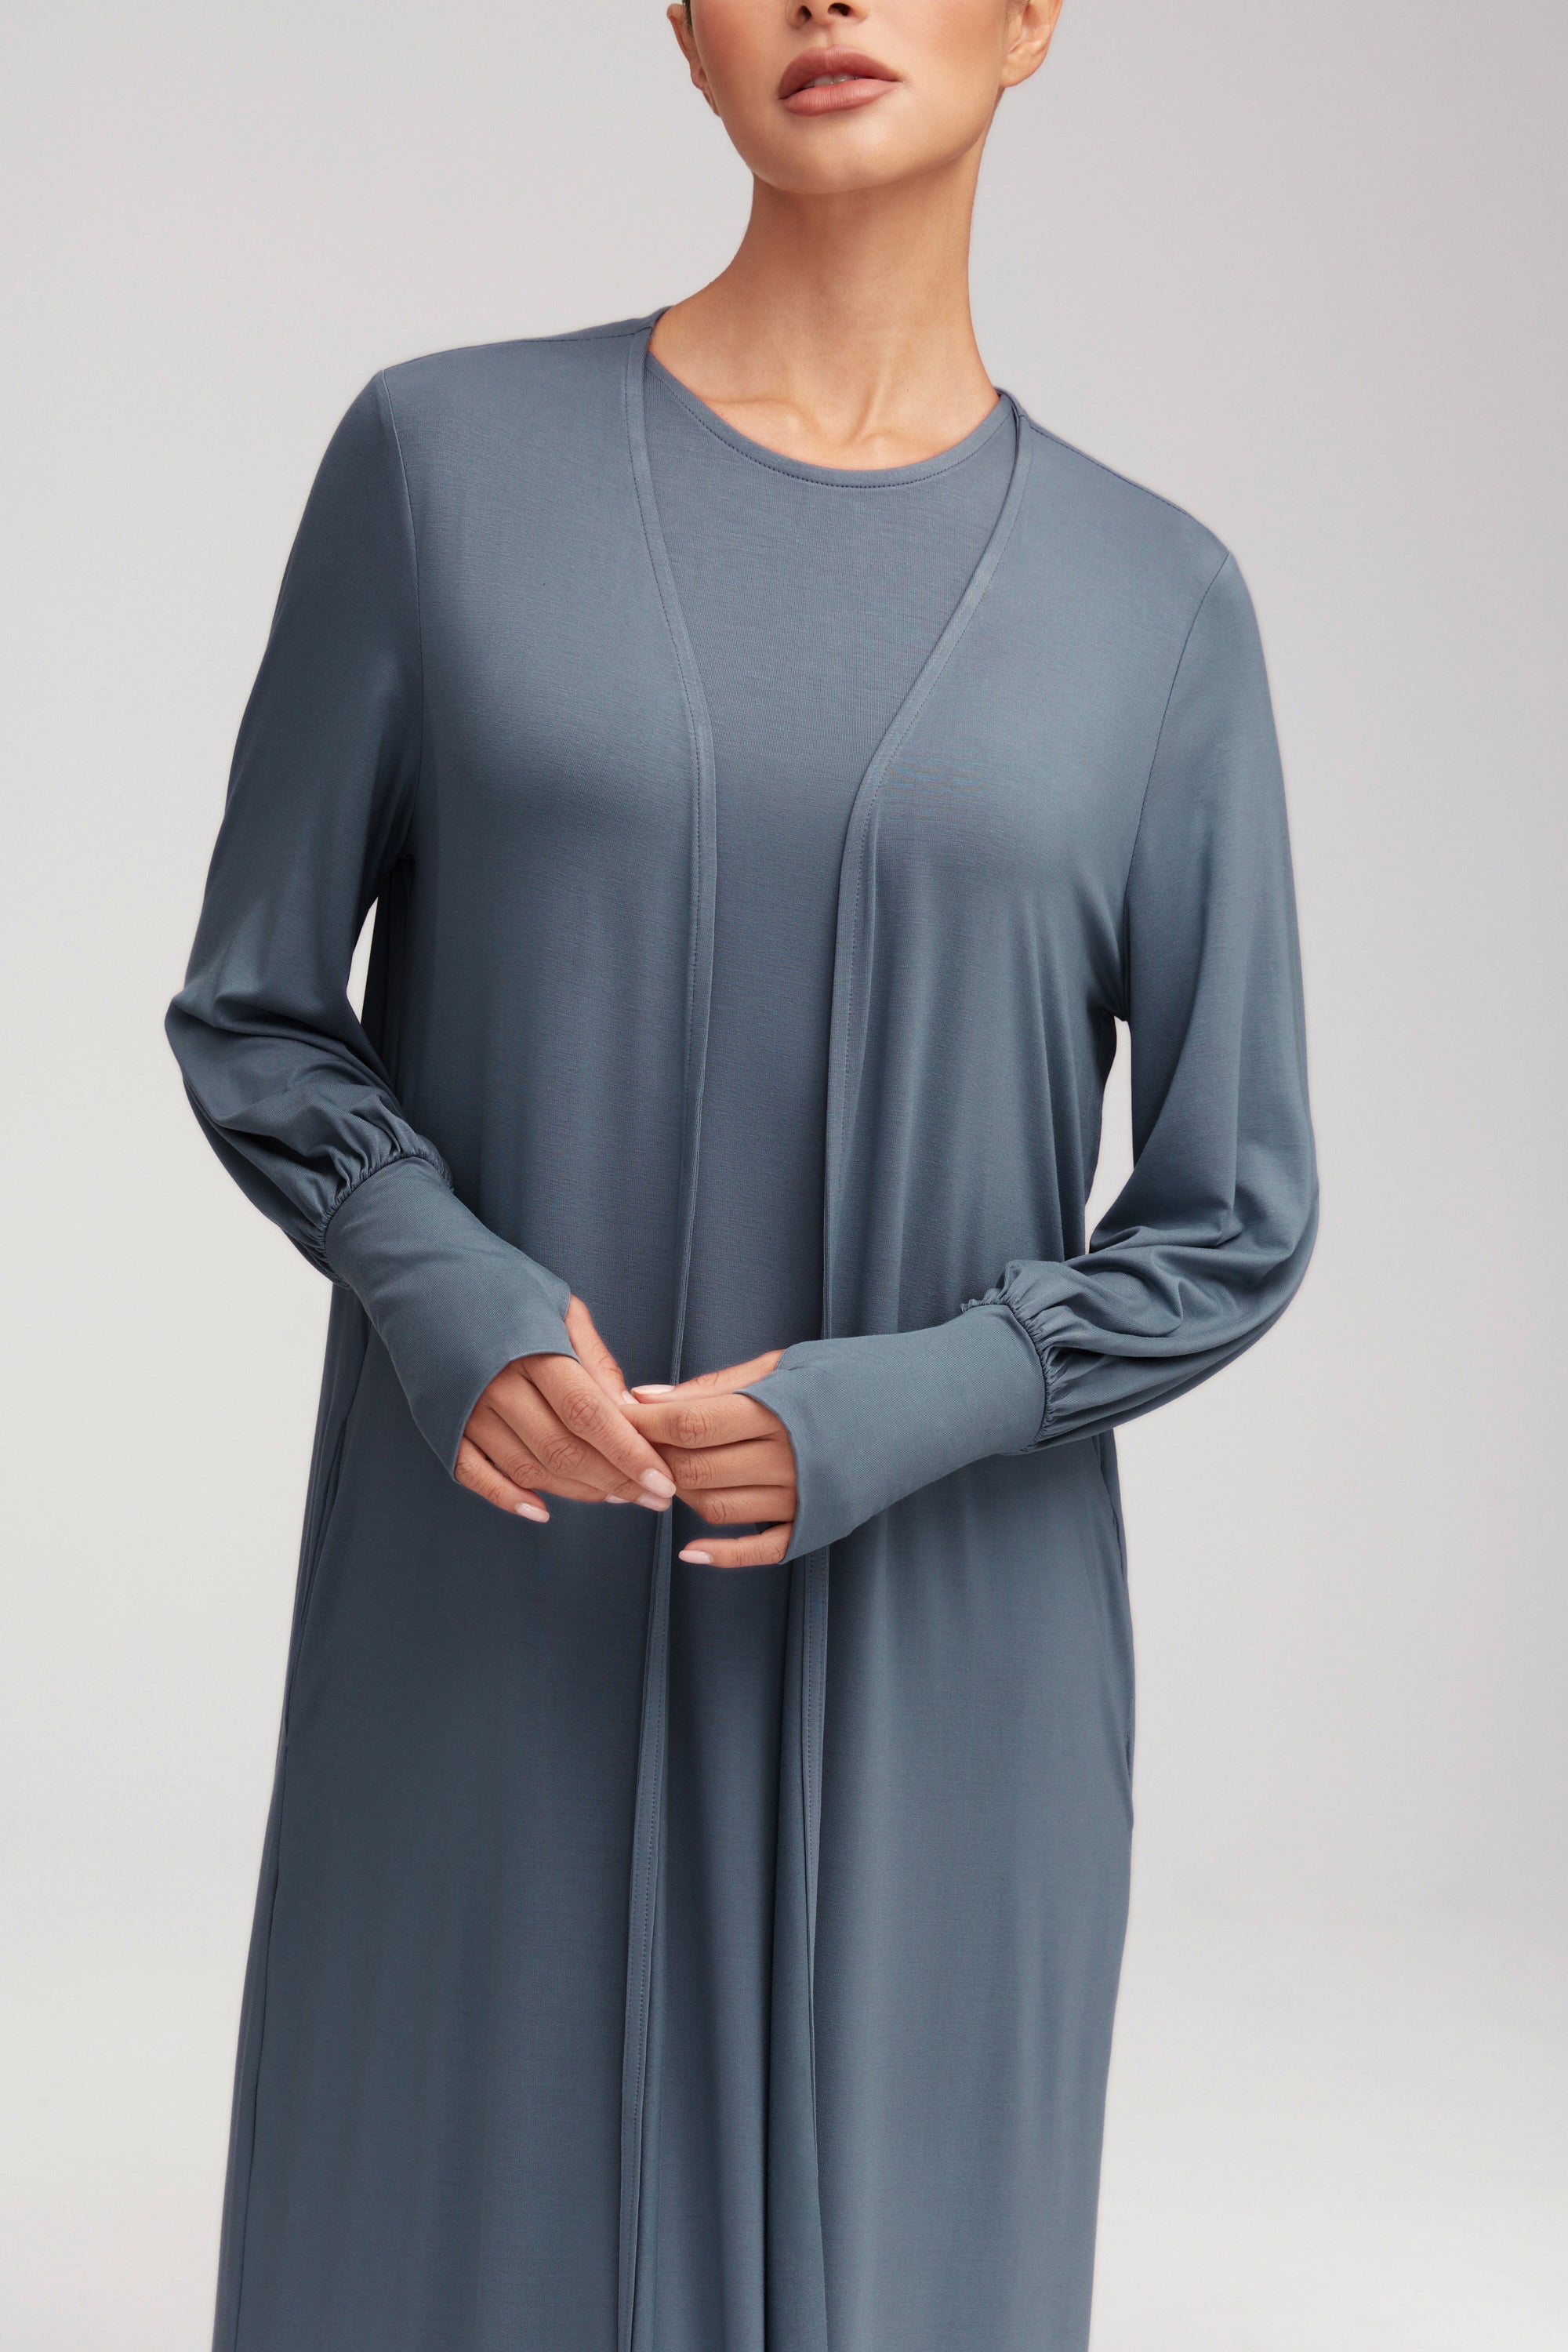 Jenin Jersey Open Abaya - Dusk Clothing Veiled 